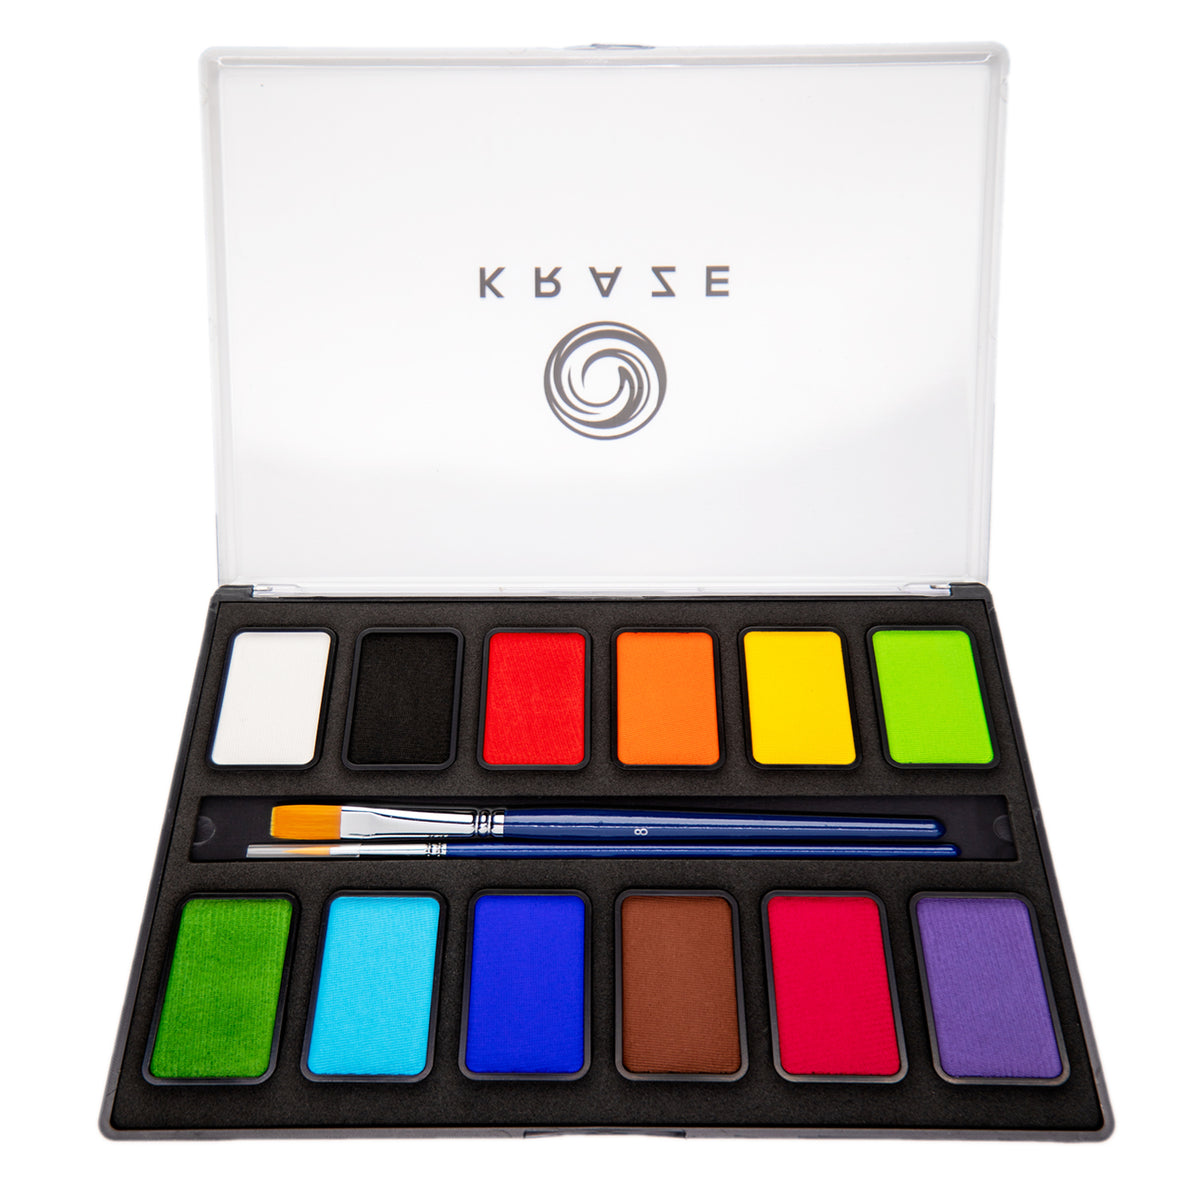 Kraze FX 12 Color Essential Palette (10 gm each)